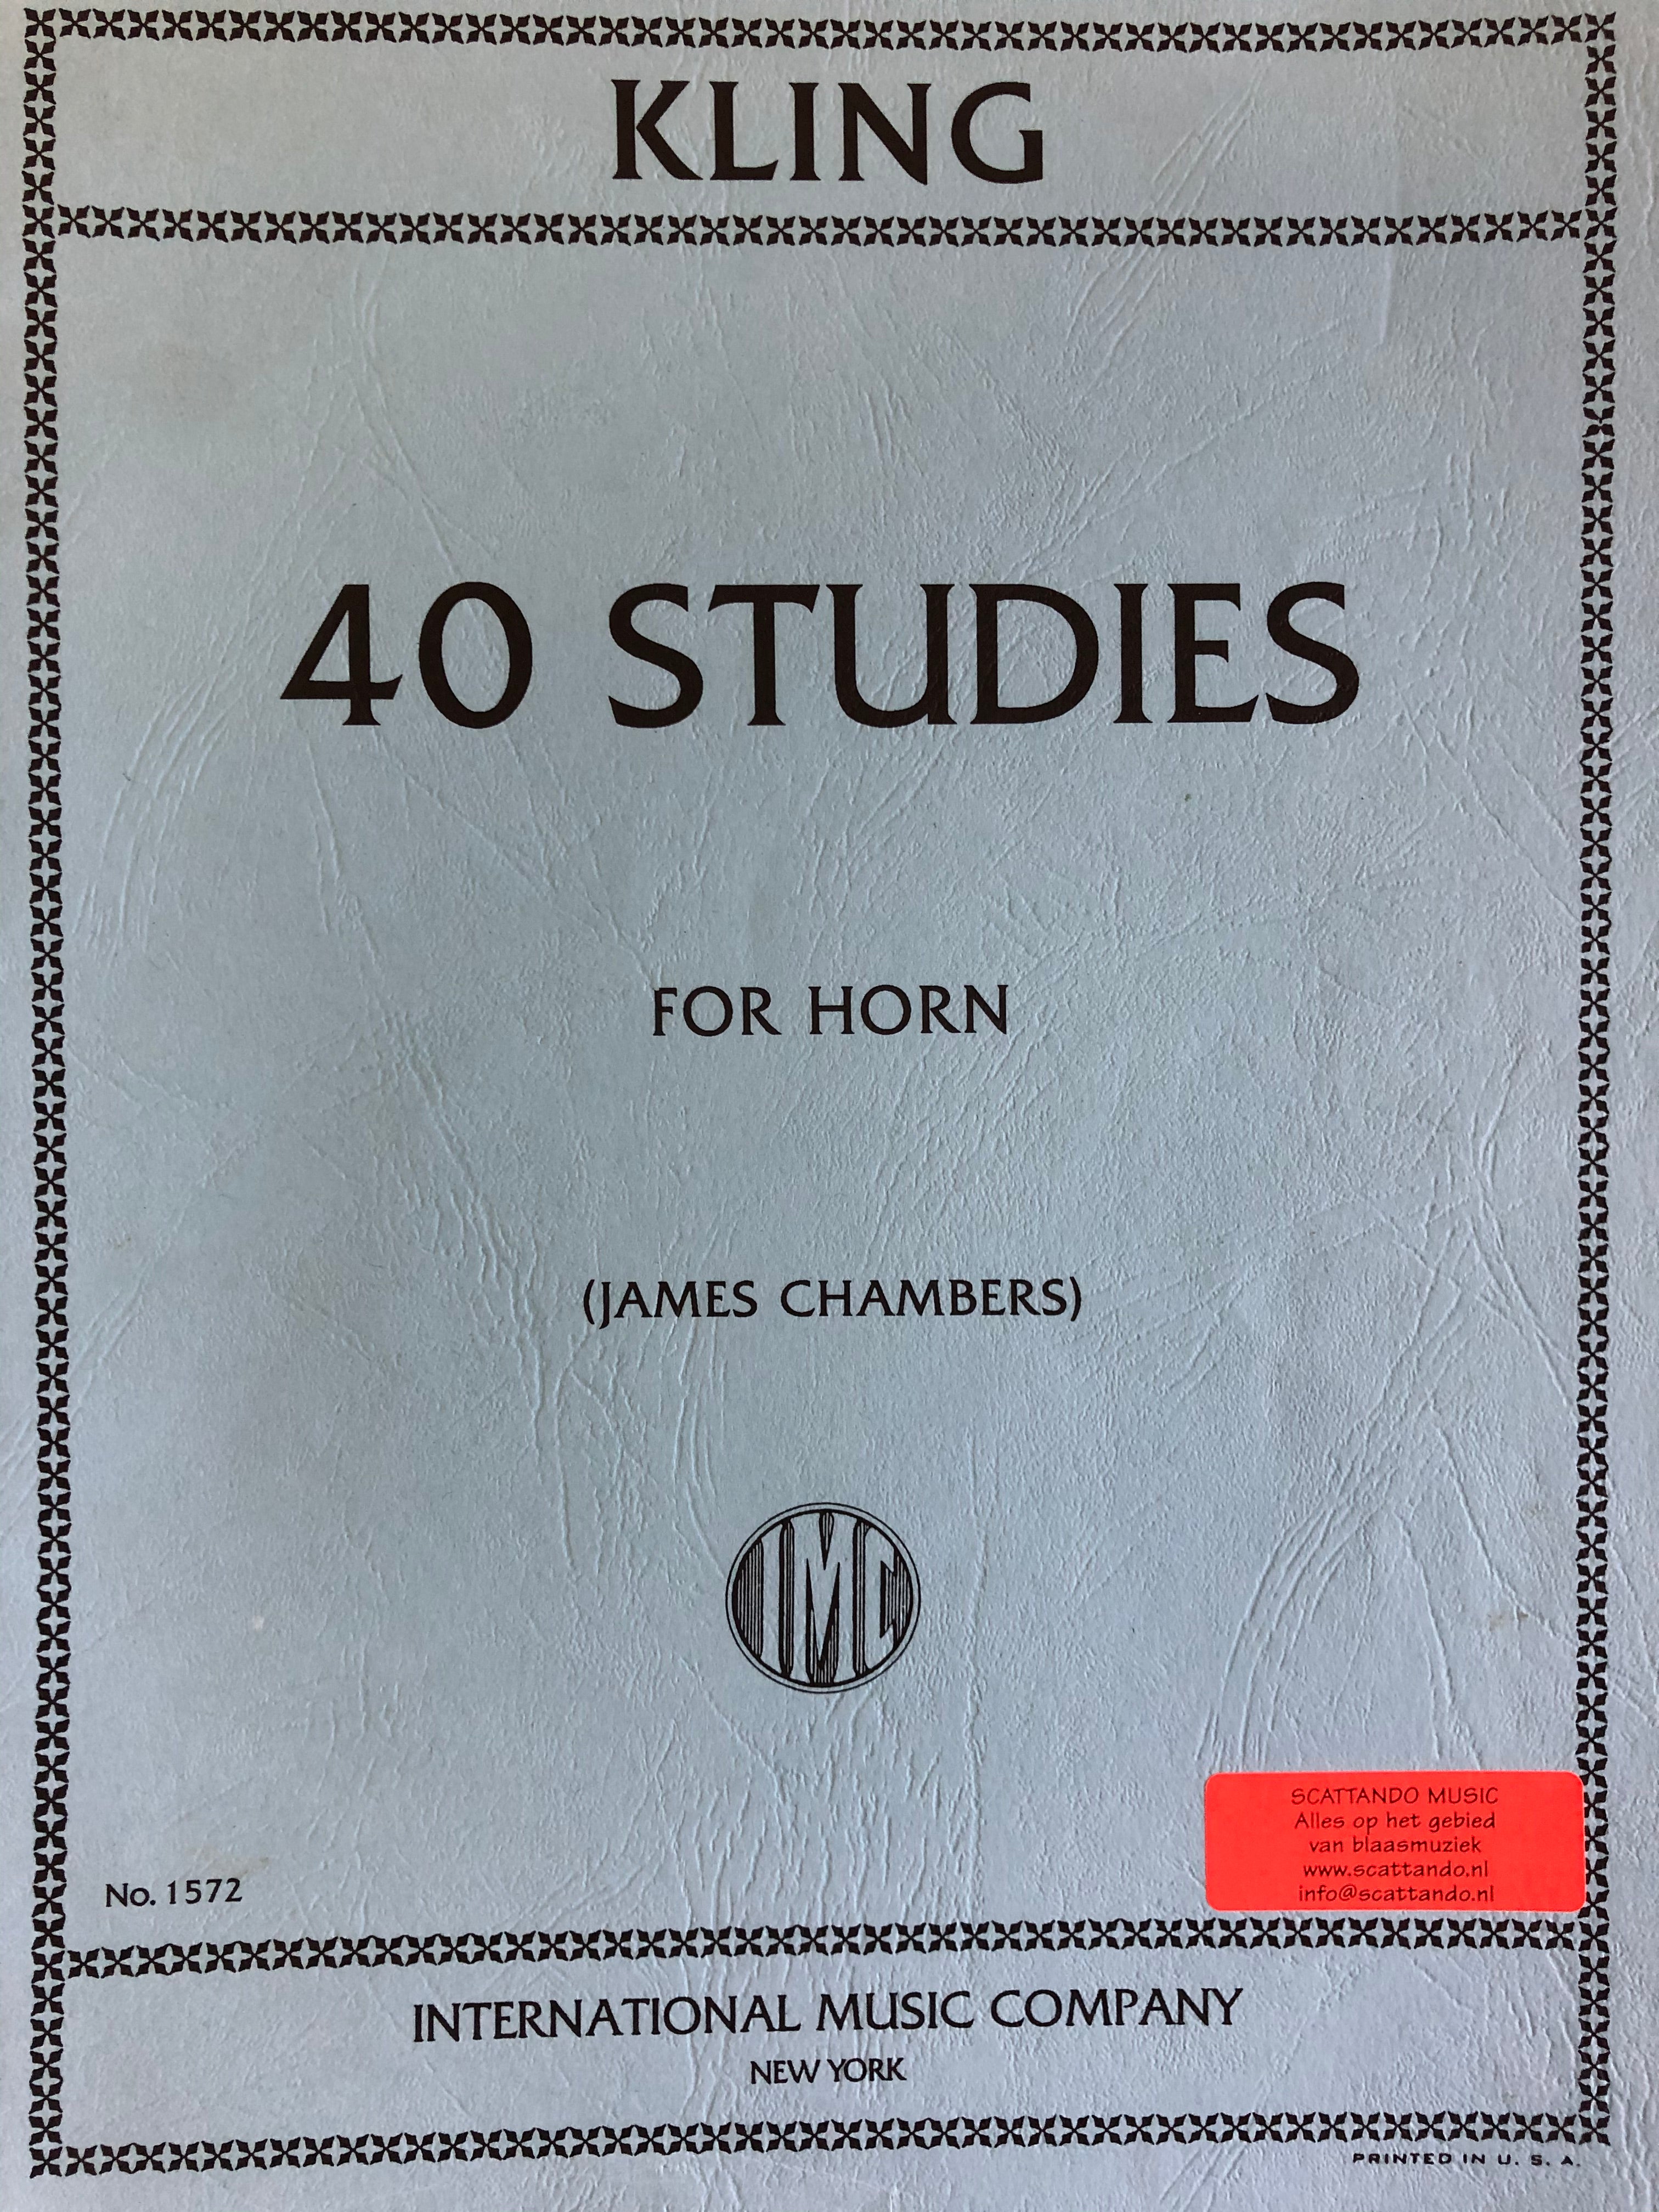 40 Studies for horn, Kling - Scattando Verkleedhuis